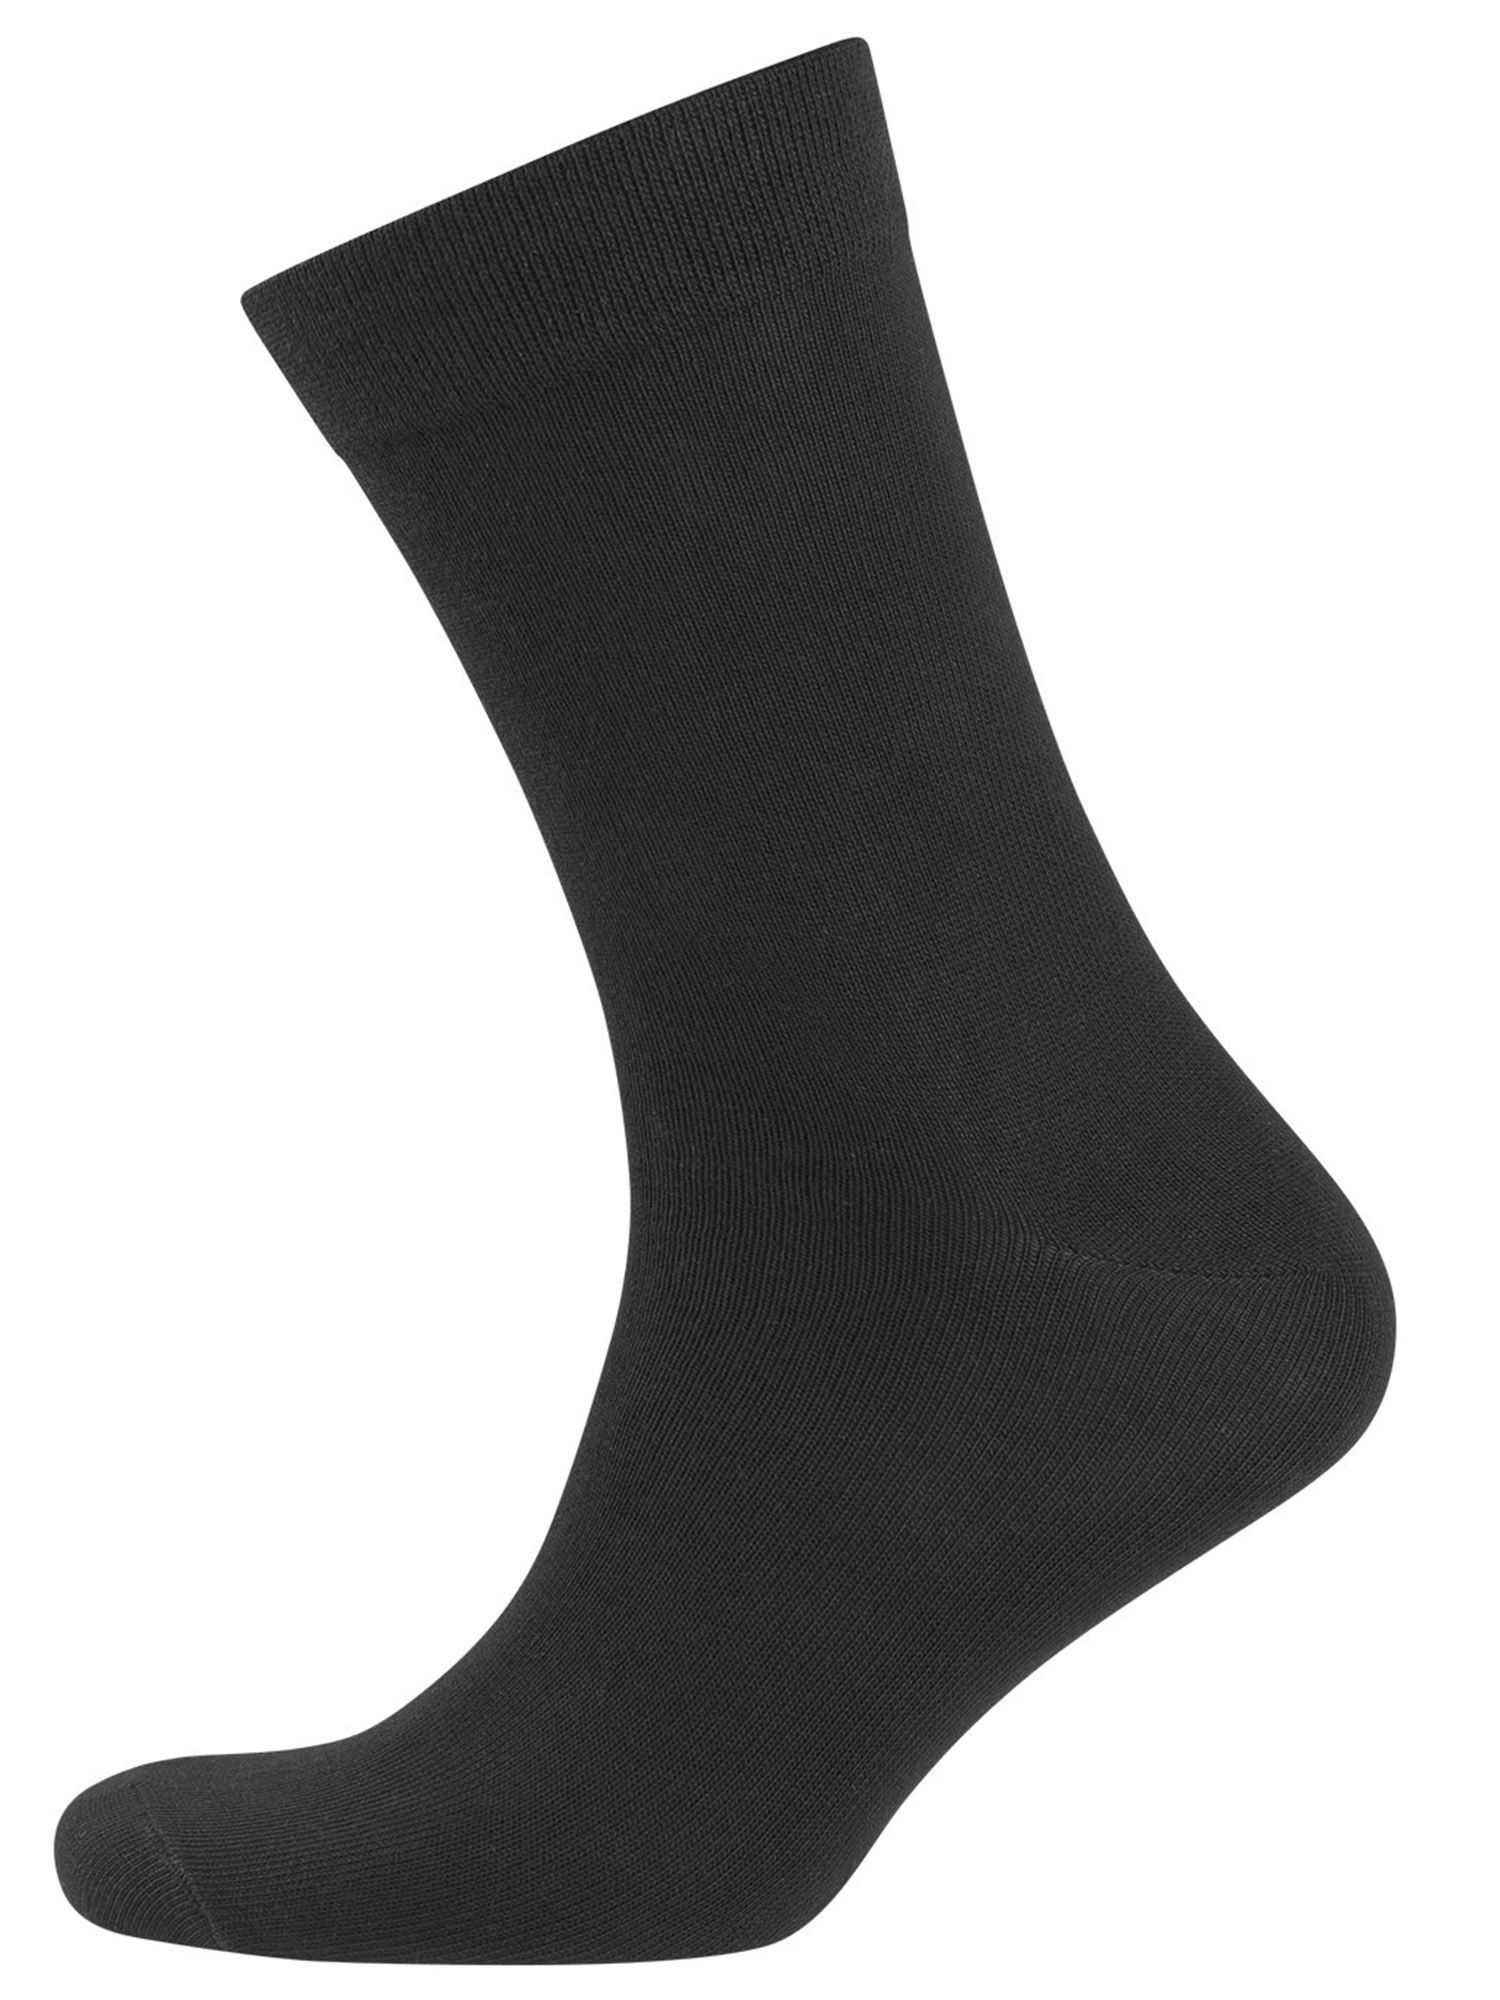 NUR DER Socken Ohne Gummi 3er Pack - schwarz - Größe 39-42